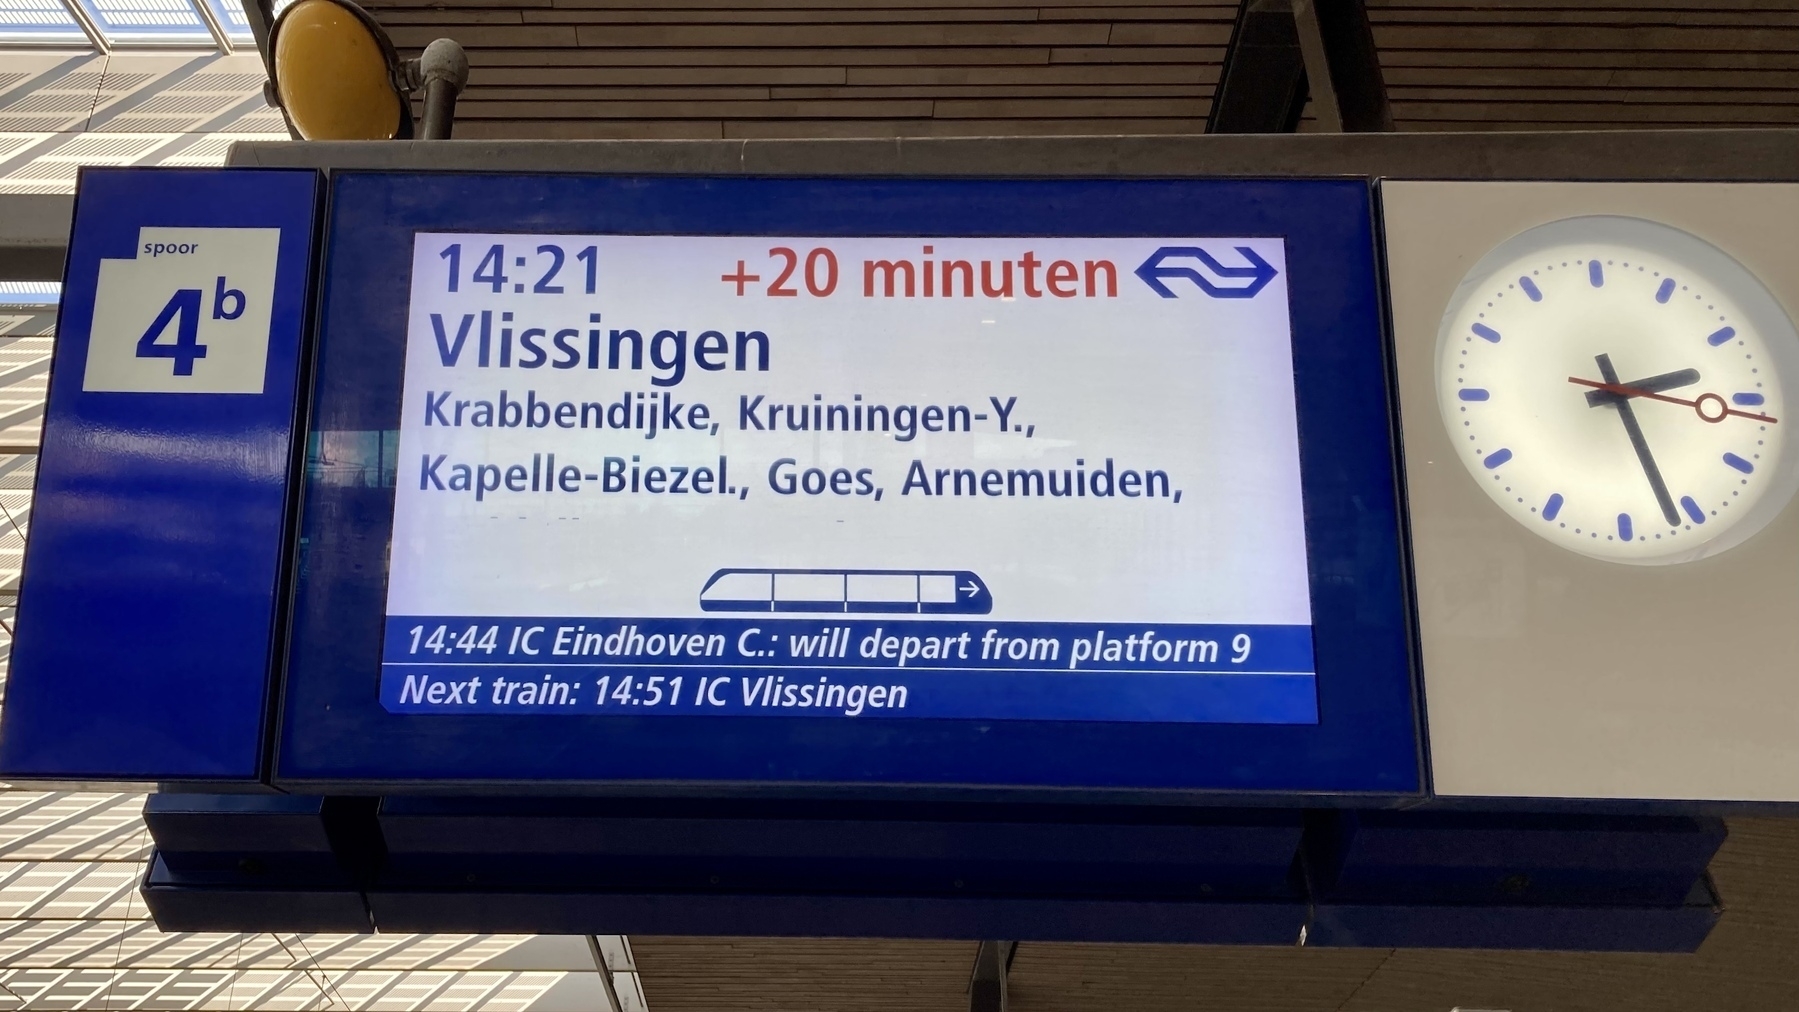 informatiebord op station Rotterdam Centraal met een vertraging van 20 minuten voor de trein naar Vlissingen